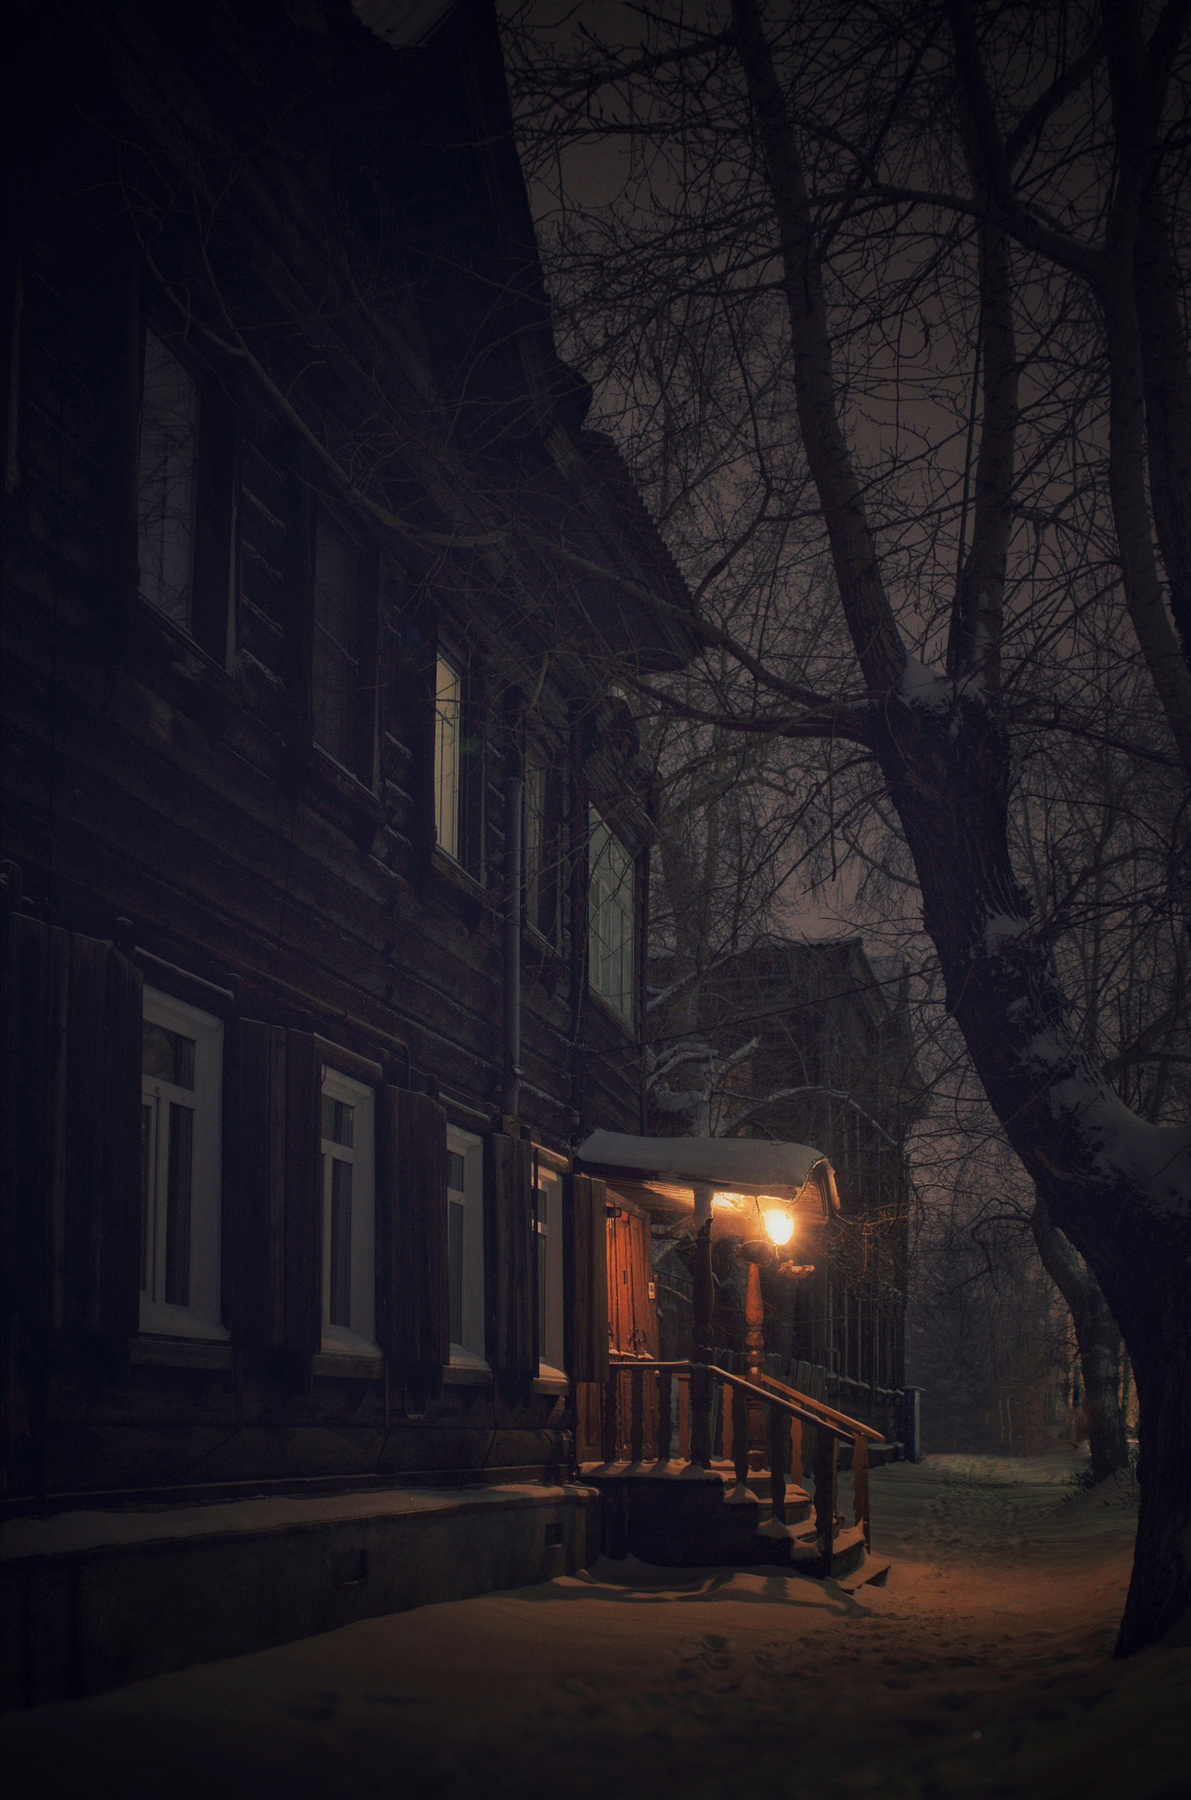 Ночь. Улица. Фонарь Ночь улица фонарь огни снег атмосферно архитектура